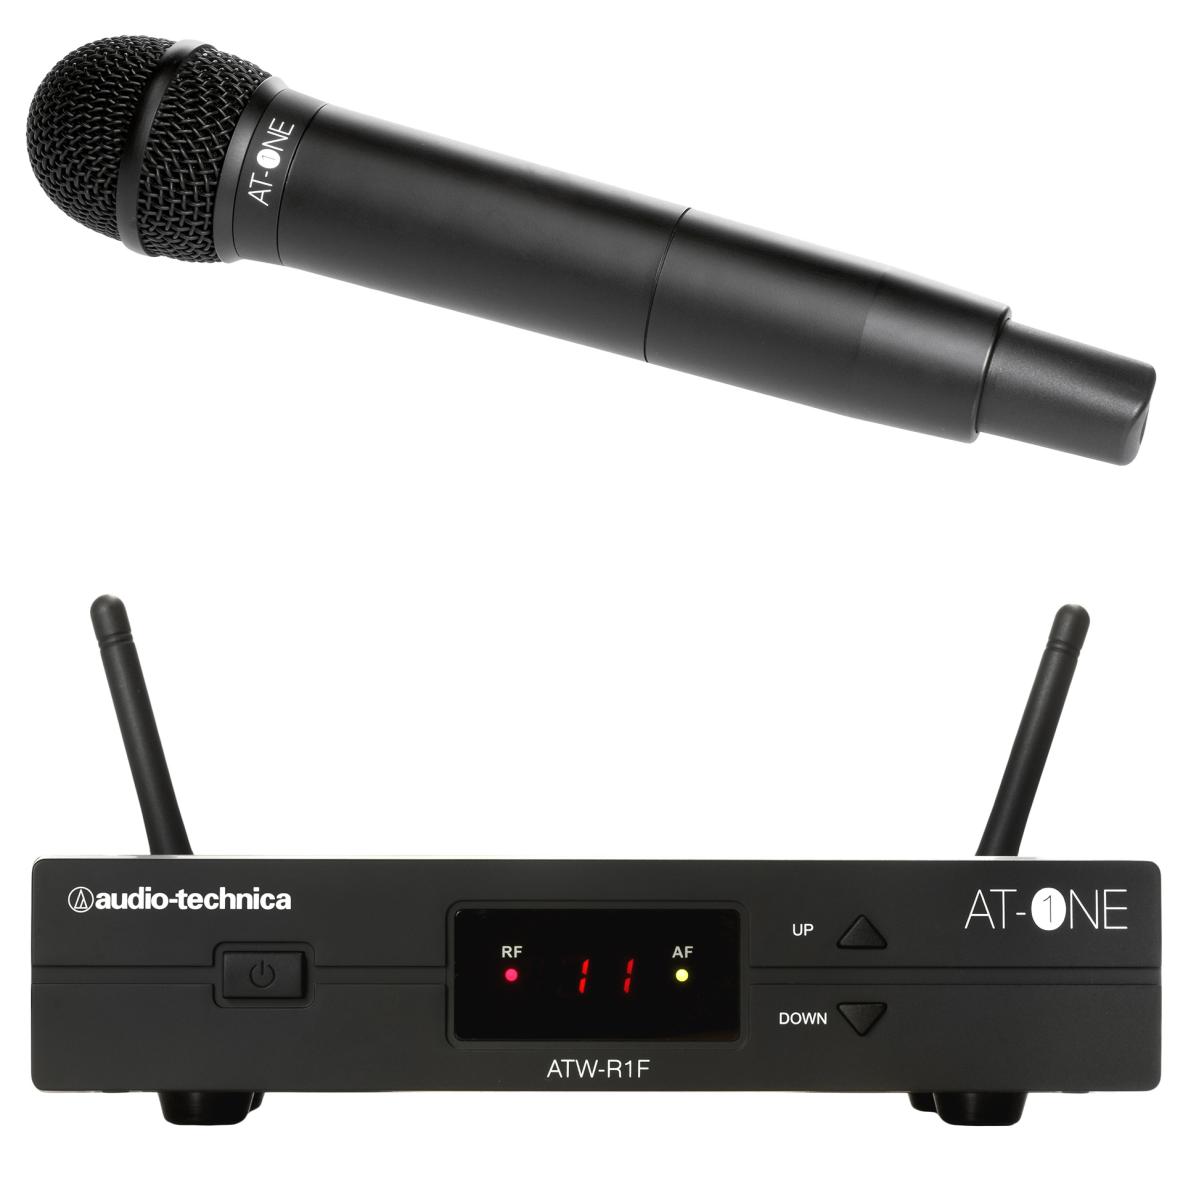 Le atw-13f at-one audiotechnica est un système entrée de gamme pour audiotechnica mais d'une qualité sans faille.